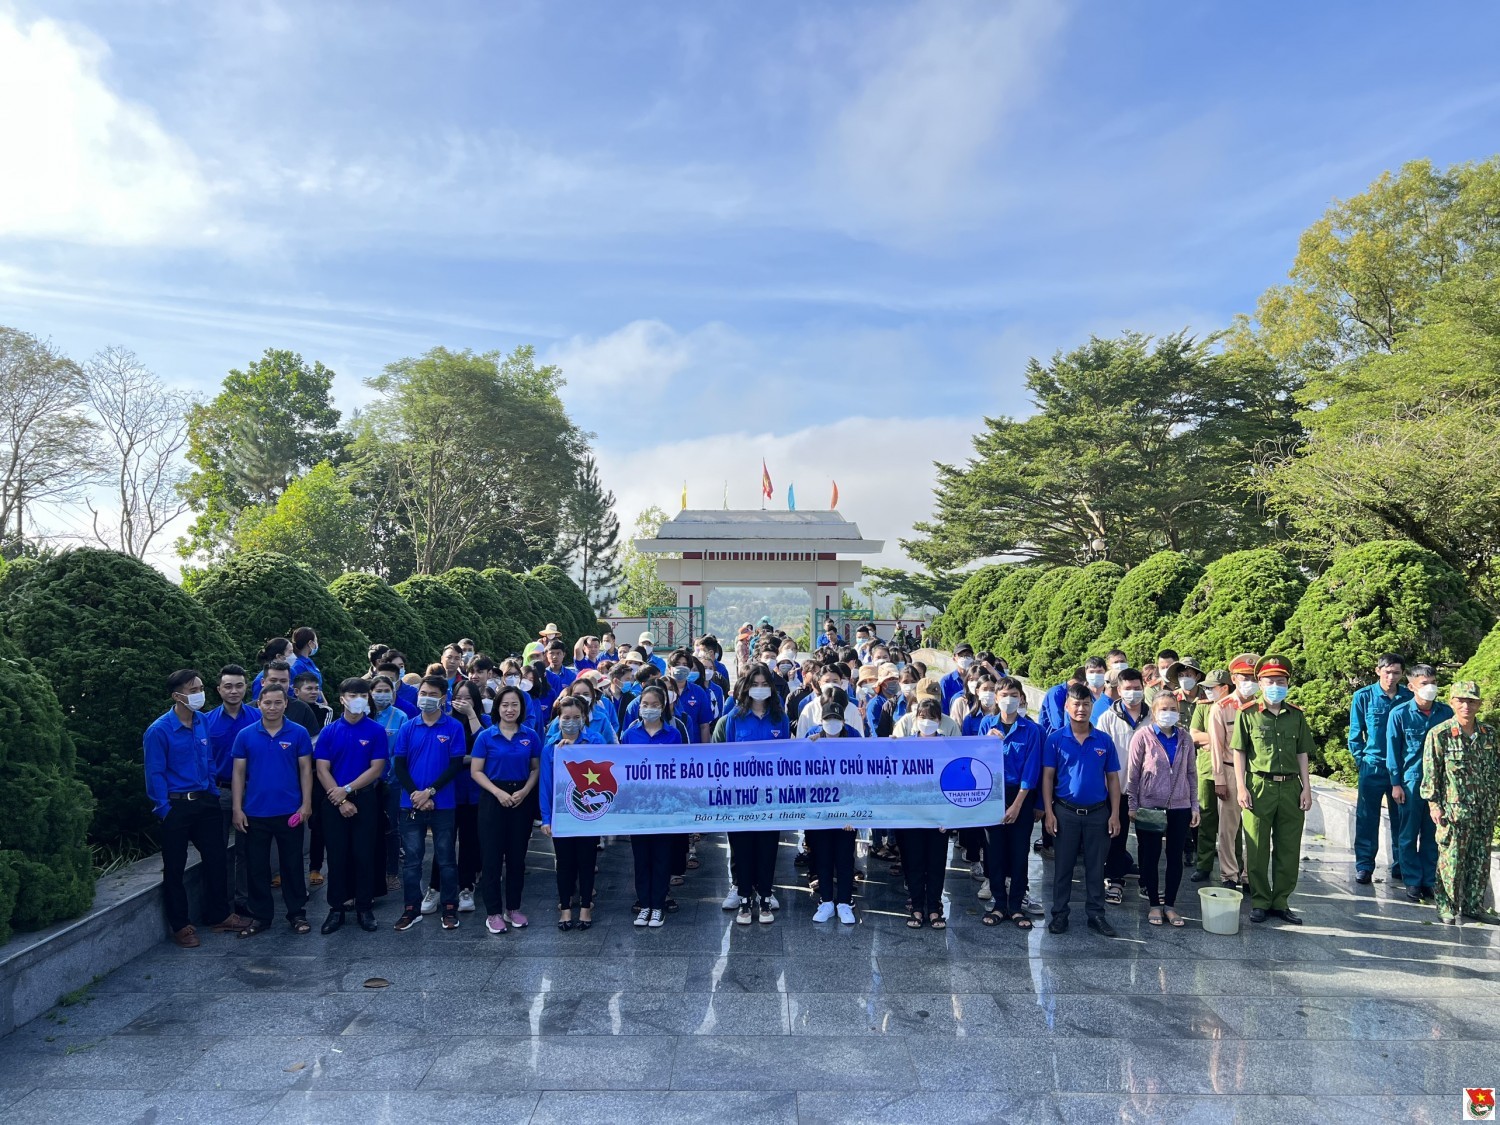 Tuổi trẻ Bảo Lộc tổ chức hoạt động ngày chủ nhật xanh - lần 5/2022